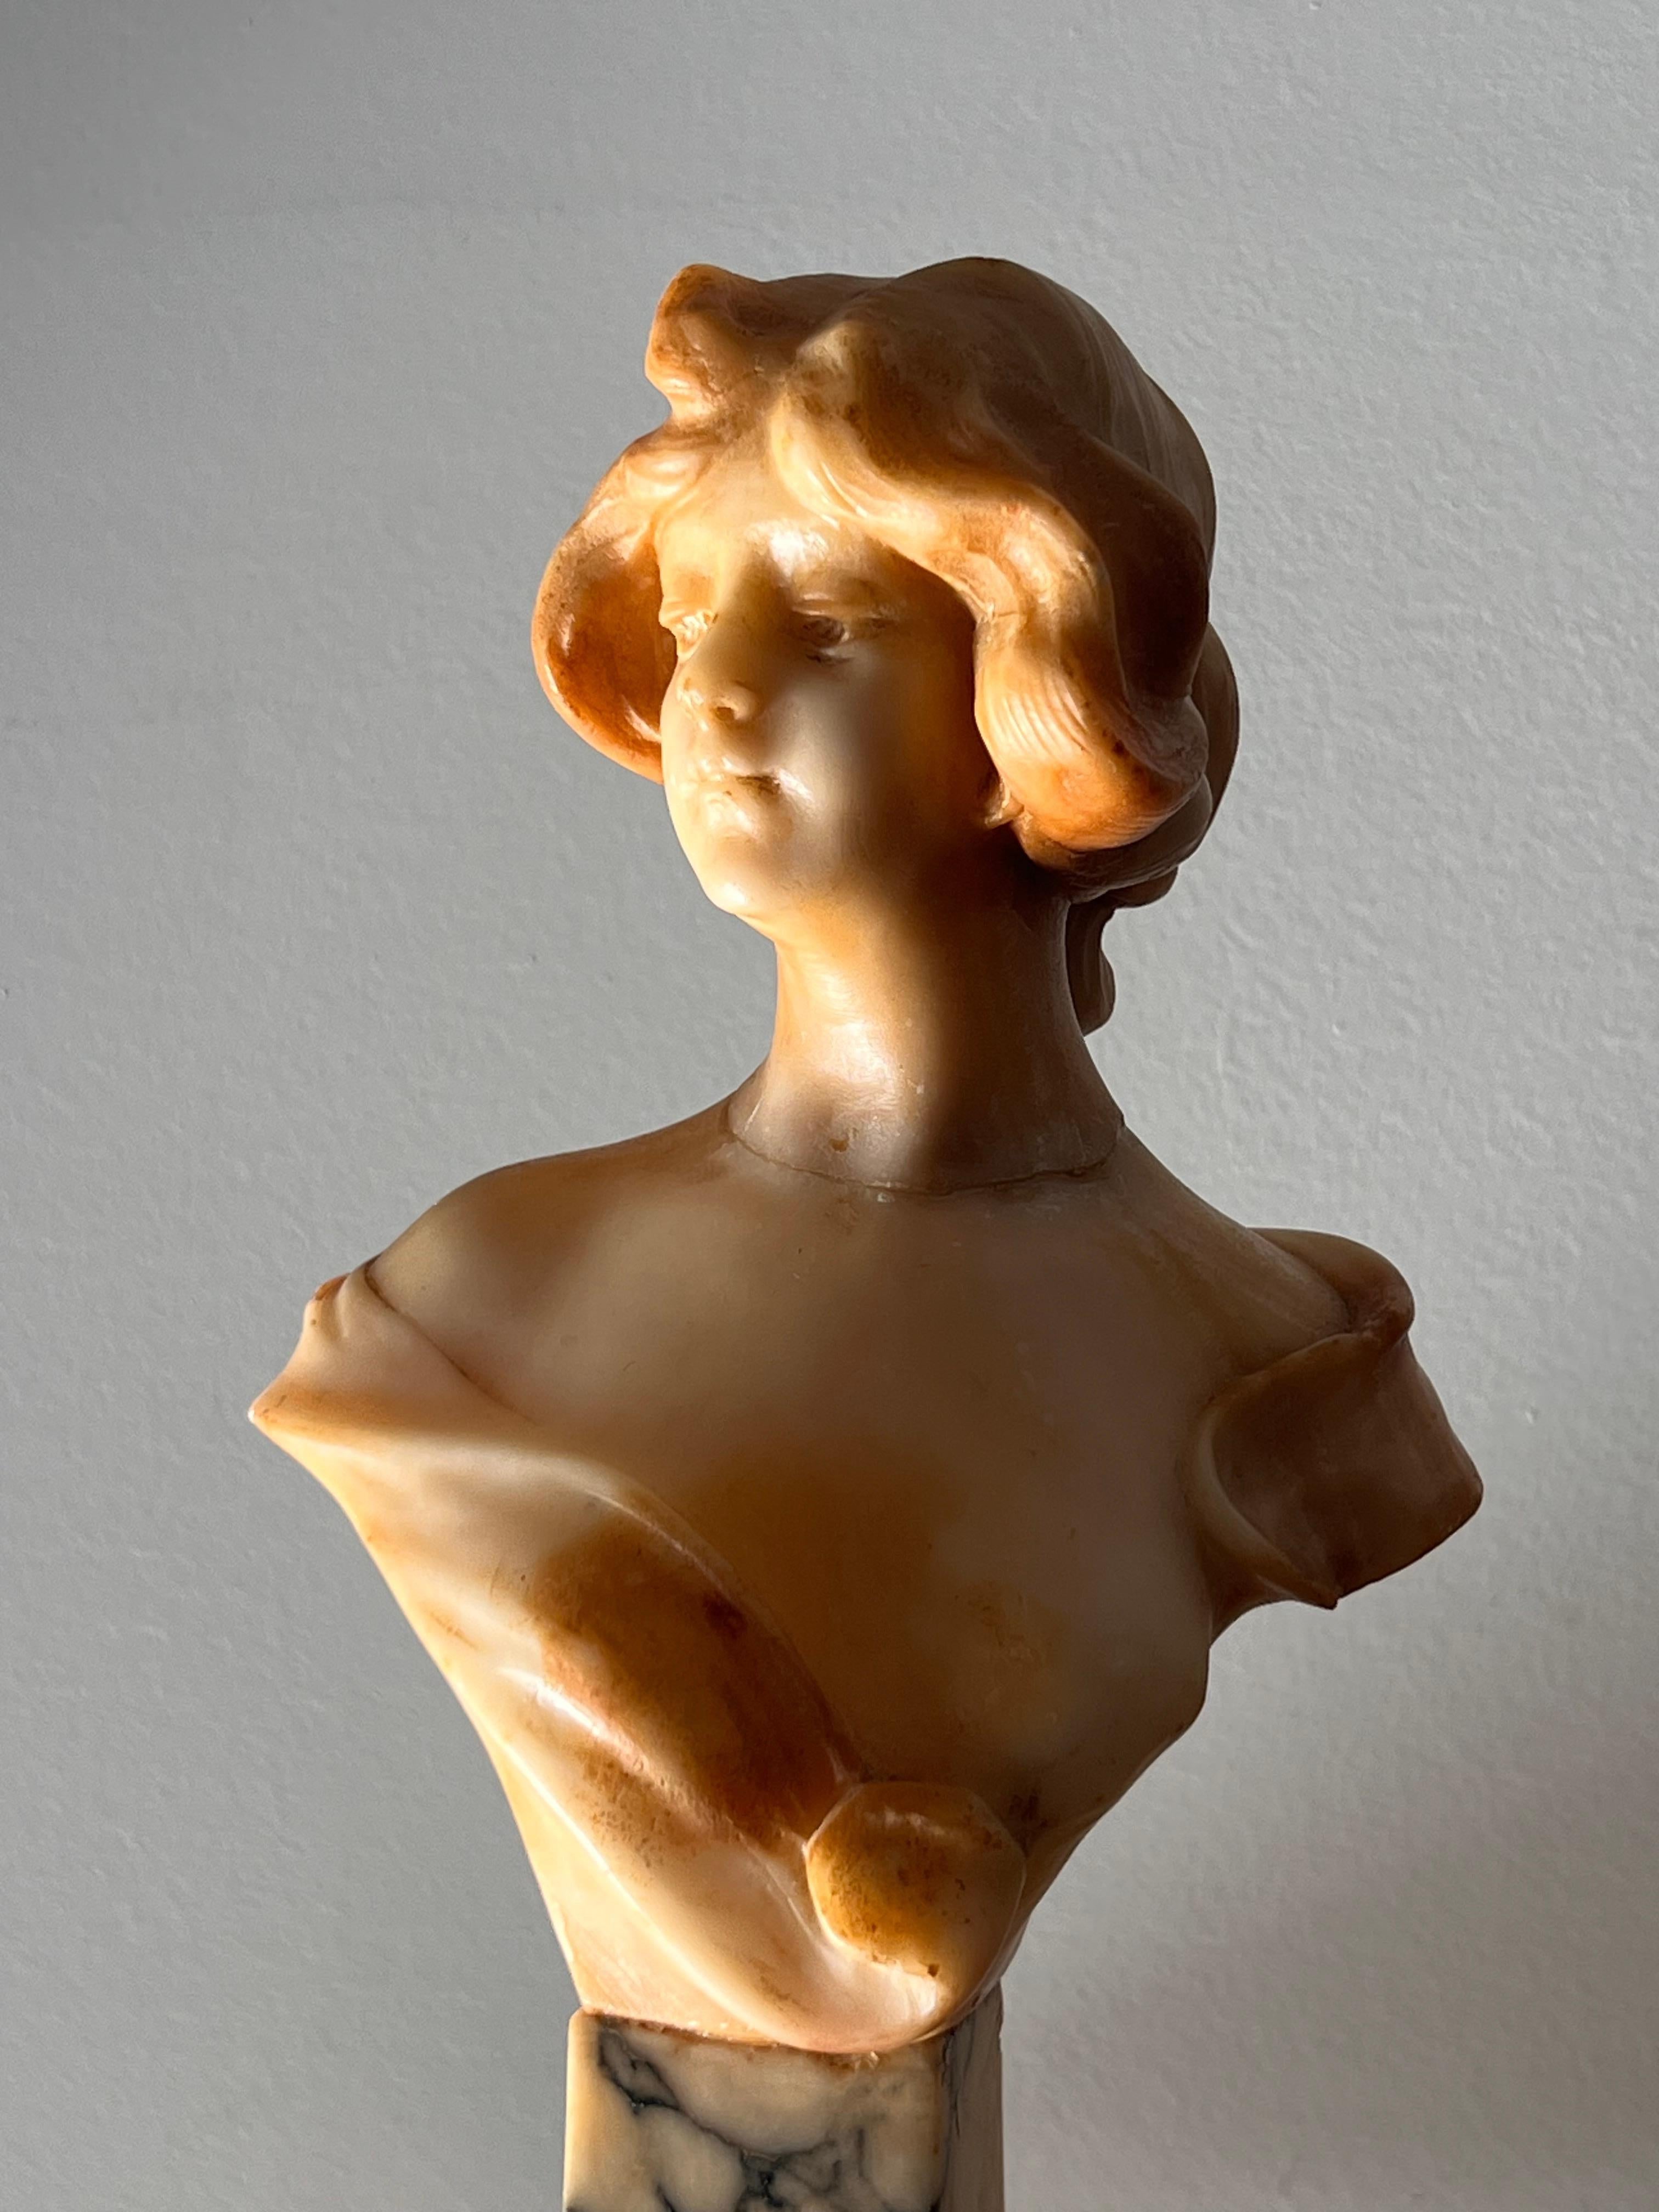 Skulptur einer Frauenbüste aus Alabaster auf einem Marmorsockel, signiert vom Künstler, Florenz, Italien, 20. Jahrhundert. Elemente des Rokoko und des Neoklassizismus. Bitte beachten Sie, dass sie repariert wurde; eine schwache Linie ist um den Hals